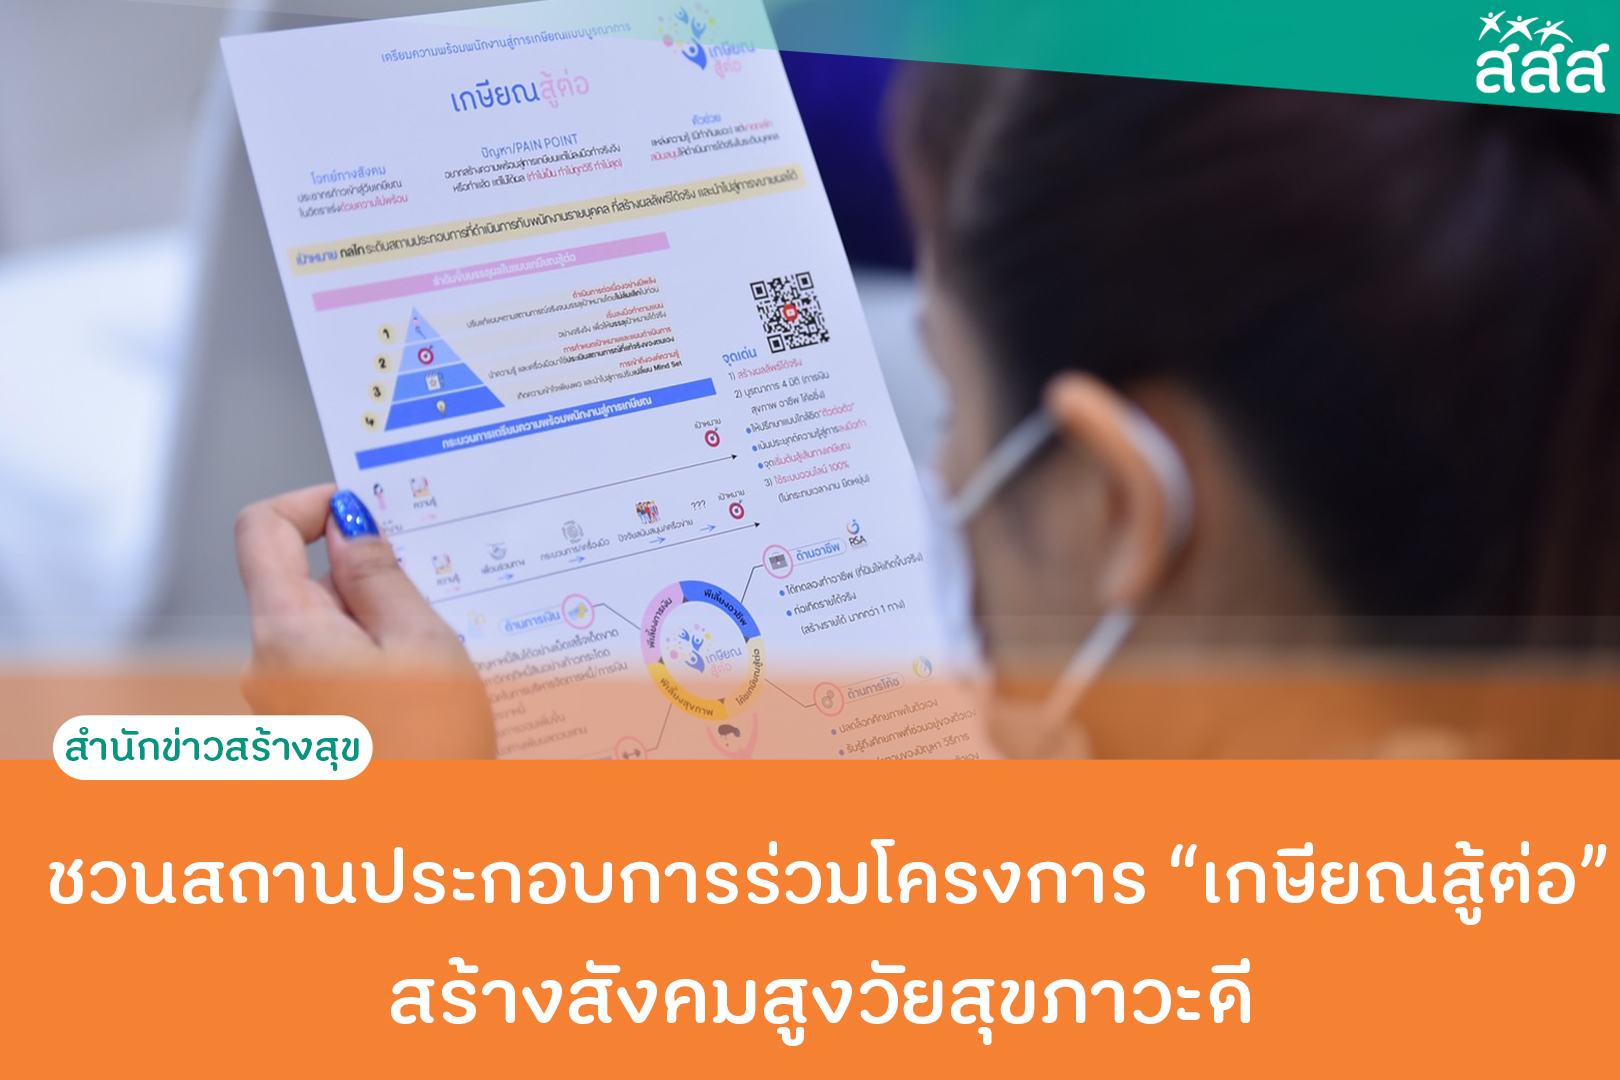 ชวนสถานประกอบการร่วมโครงการเกษียณสู้ต่อ สร้างสังคมสูงวัยสุขภาวะดี  thaihealth